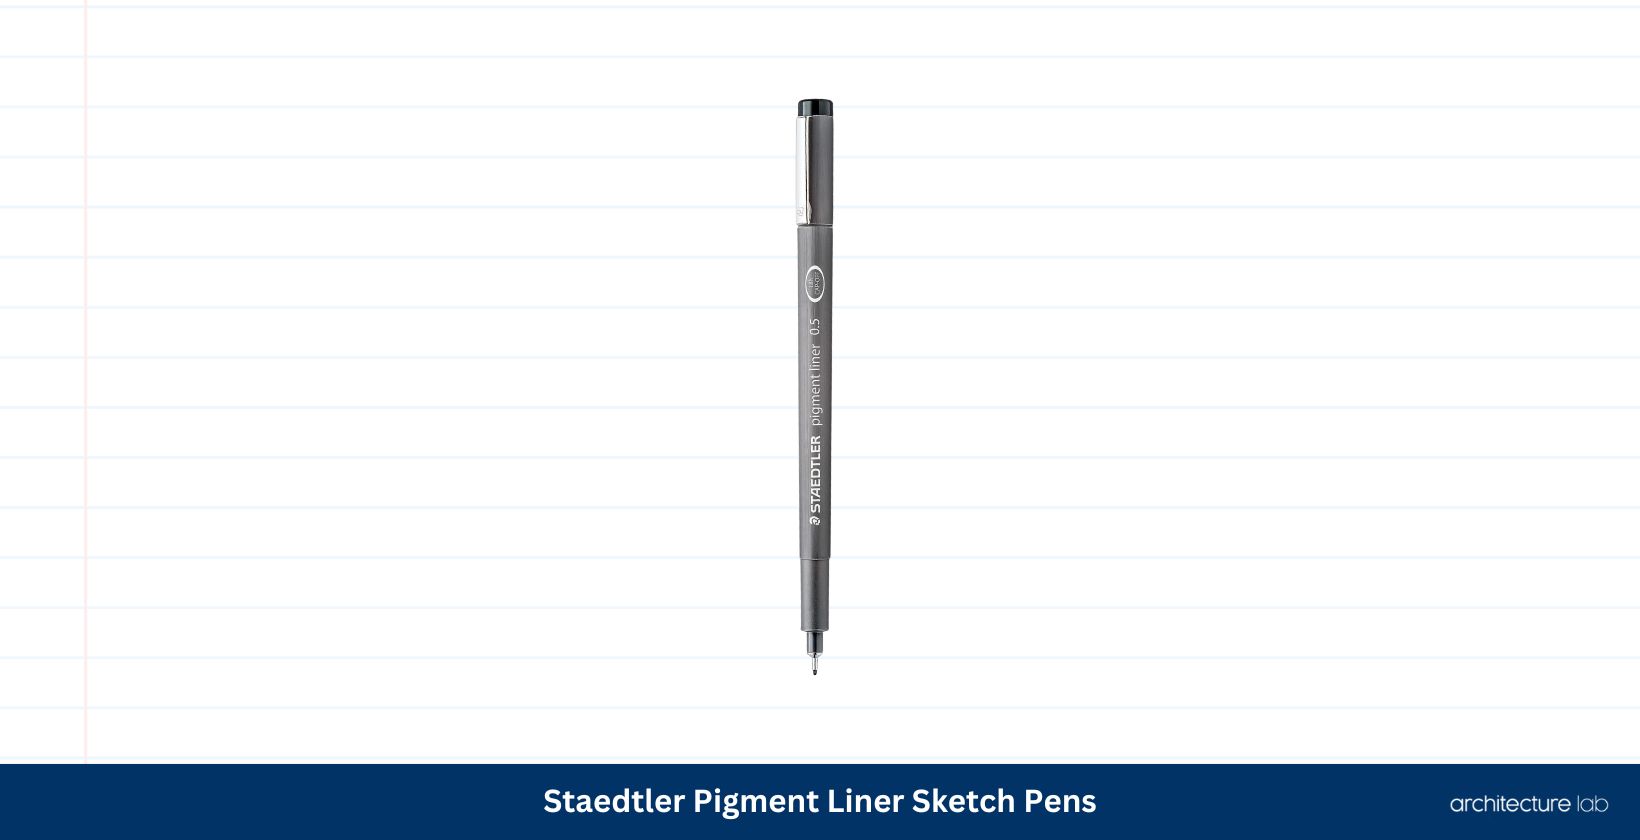 Staedtler pigment liner sketch pens